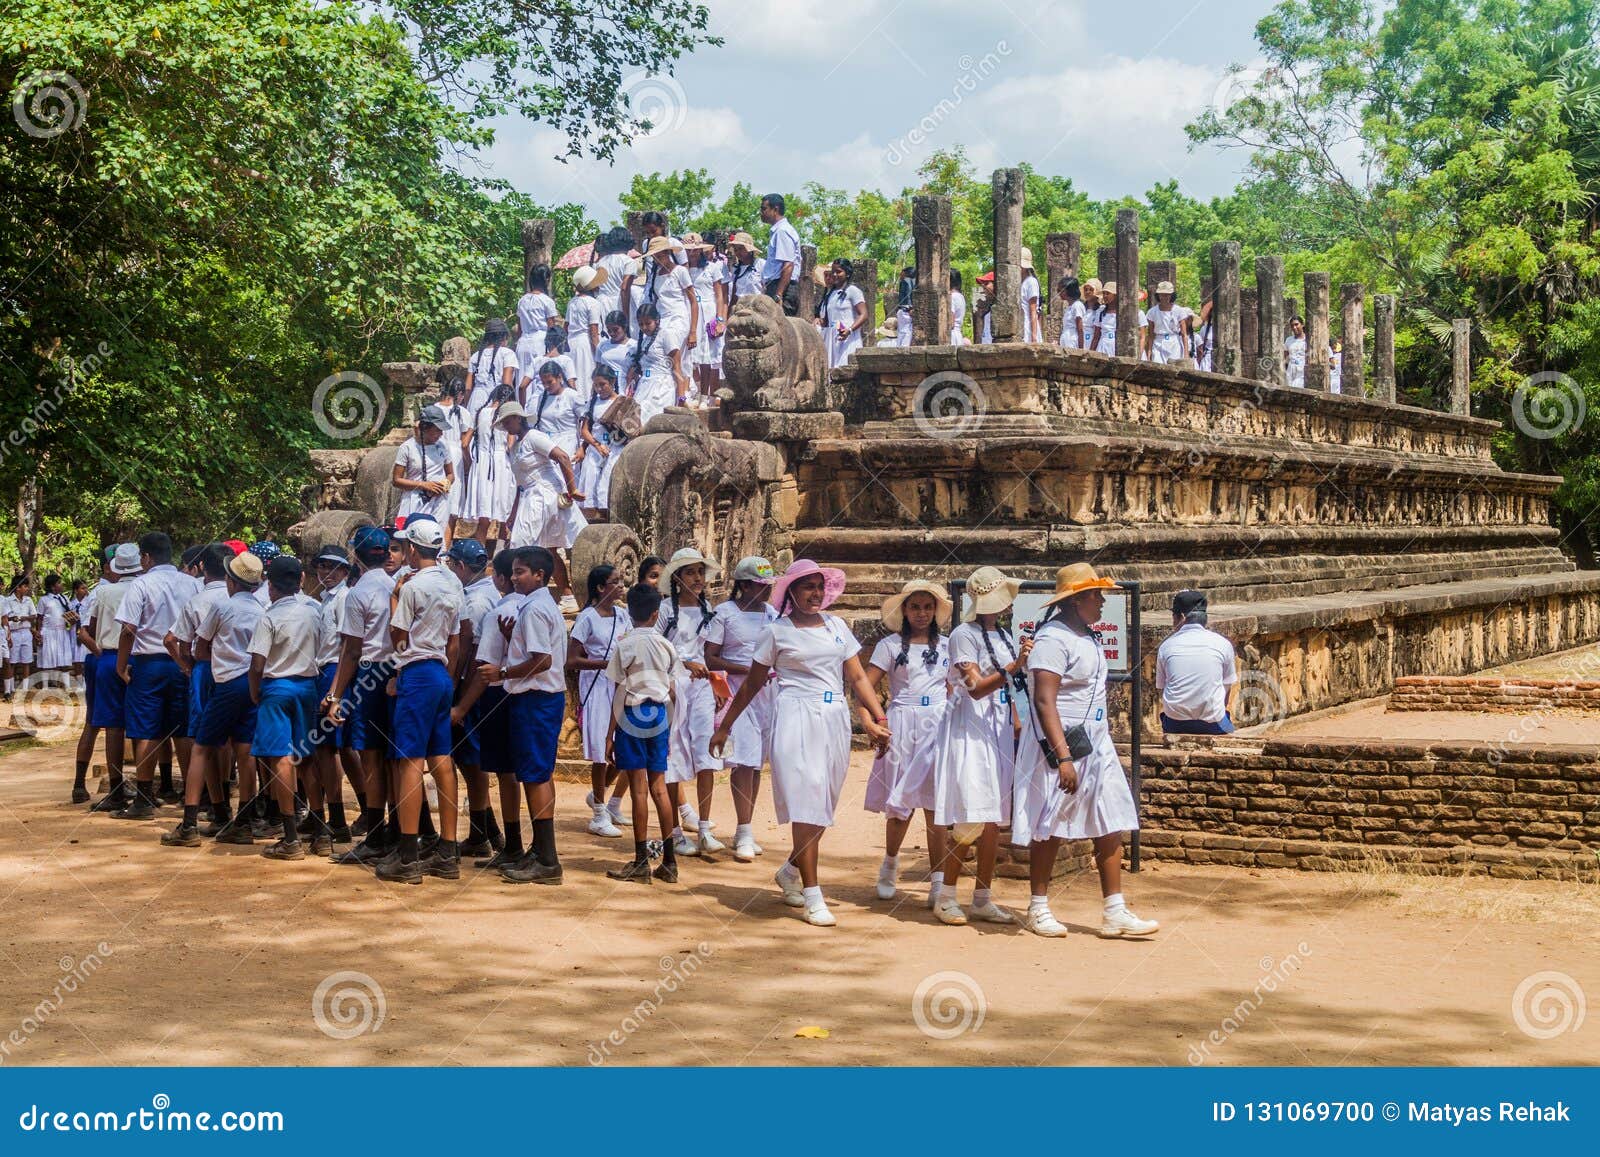 Шри ланка школы. Школьная форма в Шри Ланке. Школьная форма детей на Шри Ланке.. Школьная форма Шри Ланки мужская. Фото Шри Ланка школа ахугала длинная.